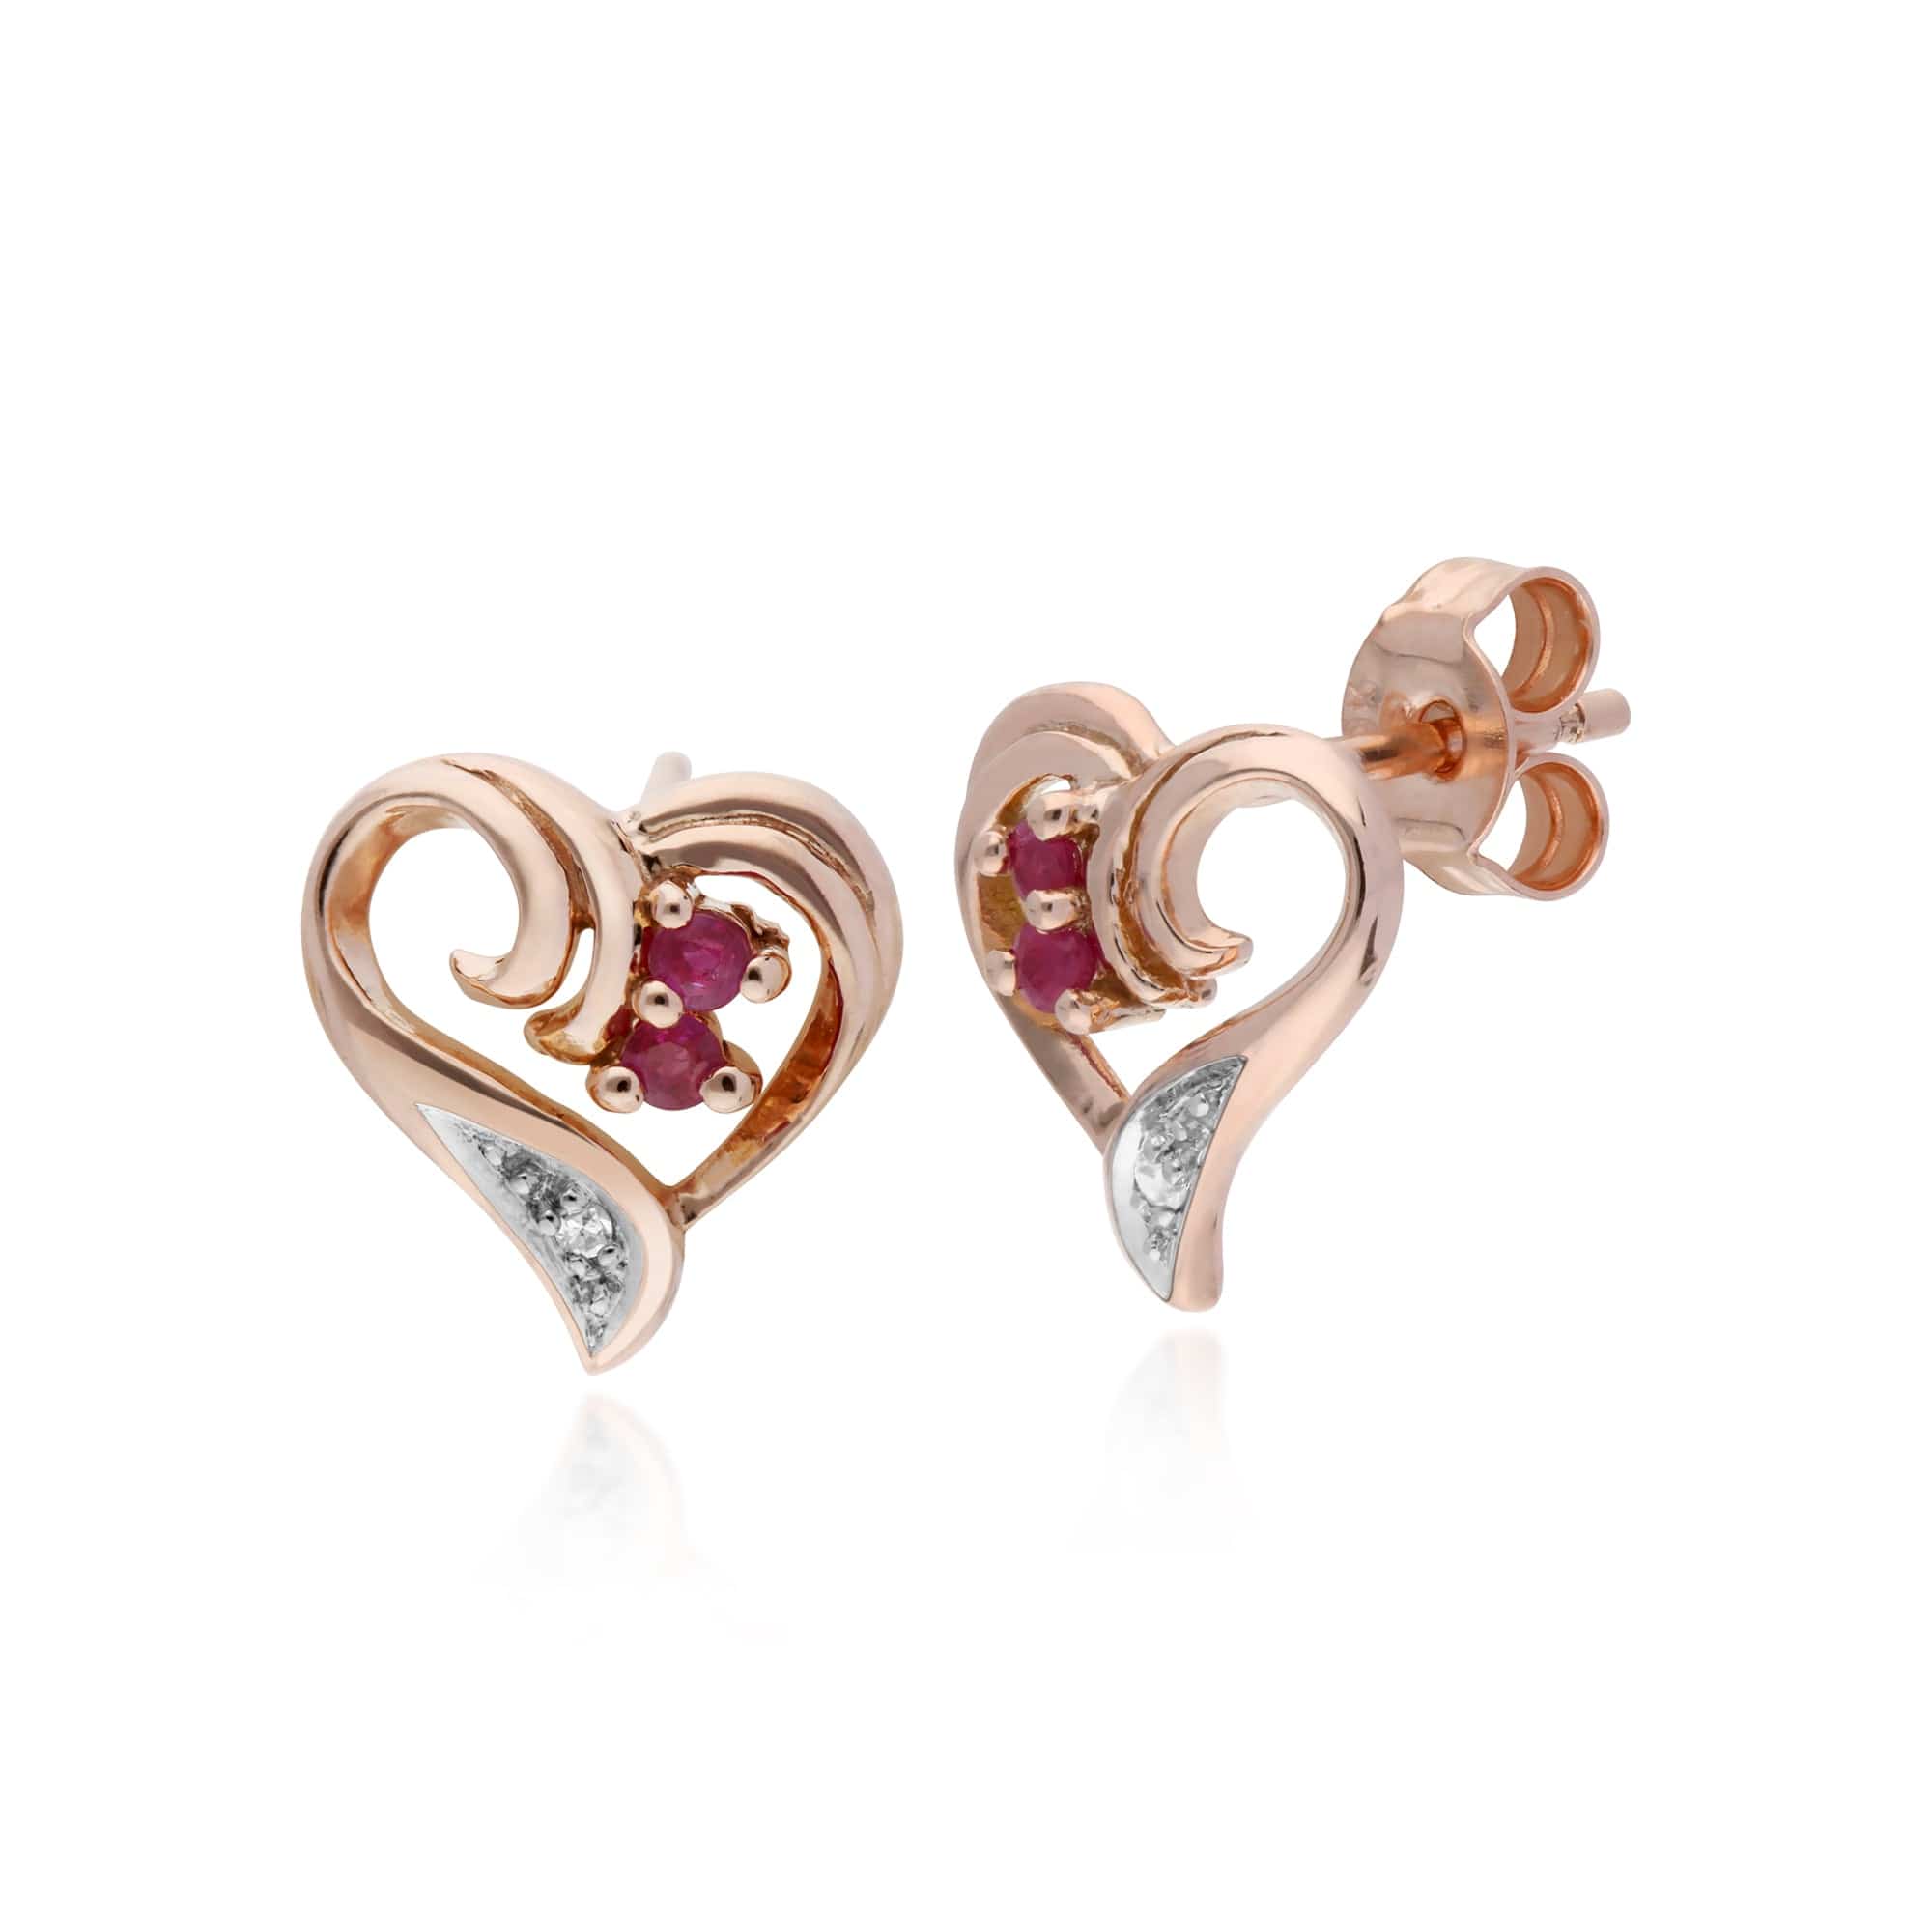 Classic Round Ruby & Diamond Fancy Swirl Heart Stud Earrings in 9ct Rose Gold - Gemondo